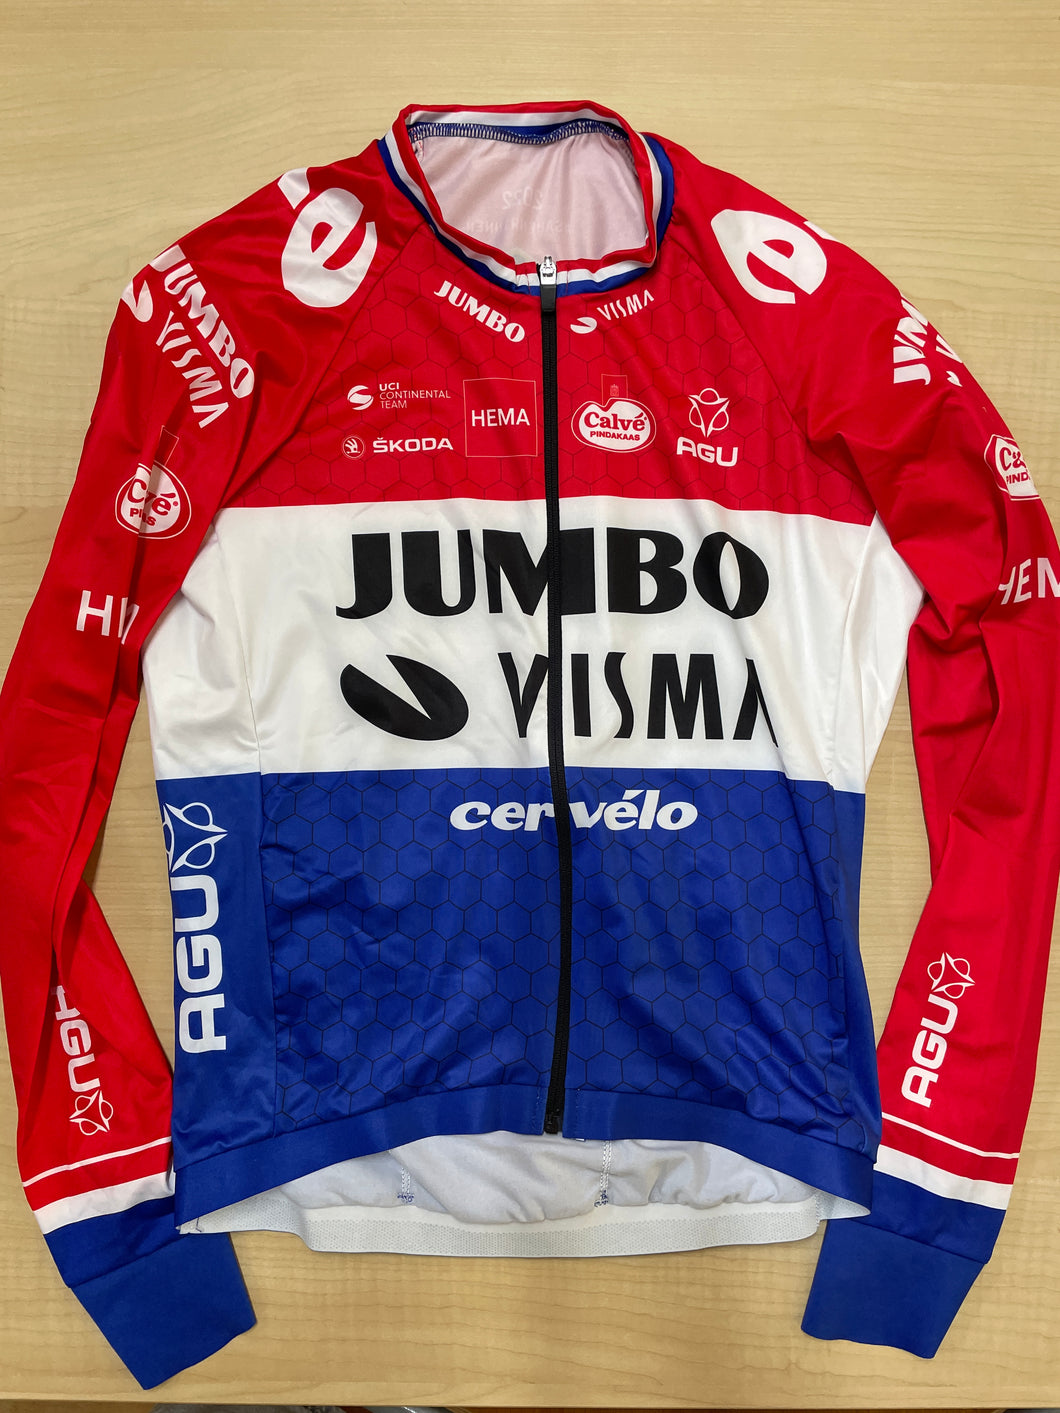 Equipo Jumbo Visma | Campeón holandés de ruta Conti | Camiseta de verano LS | M. Van Dijk | METRO